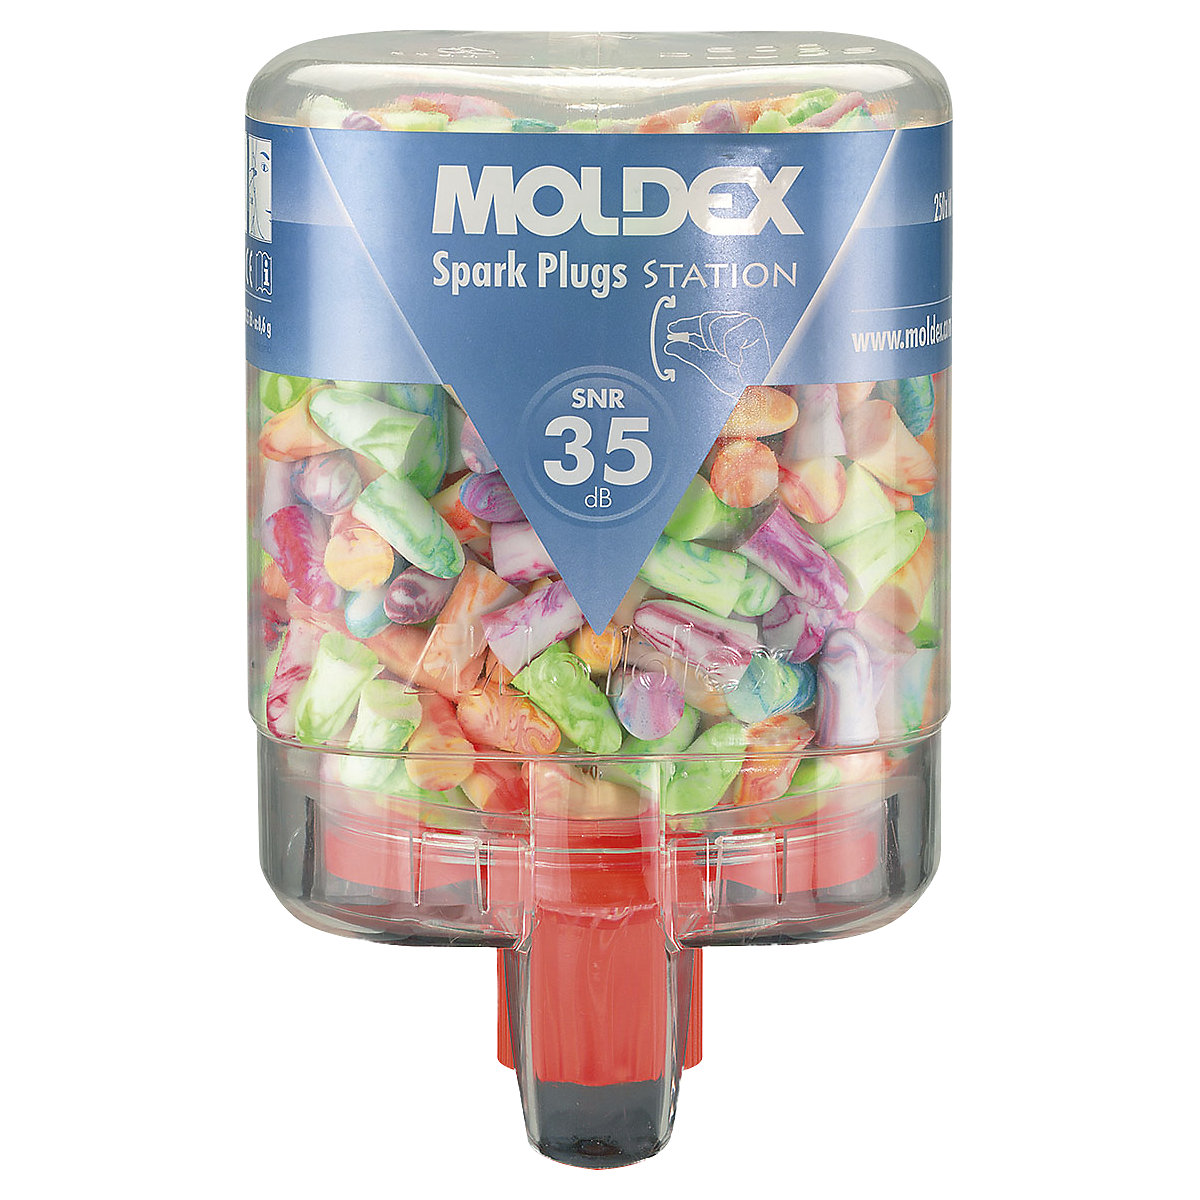 Kit de protection auditive, avec bouchons d'oreille – MOLDEX, SparkPlugs® multicolores, rapport signal sur bruit 35 dB, avec 250 paires de bouchons Spark Plugs®-1